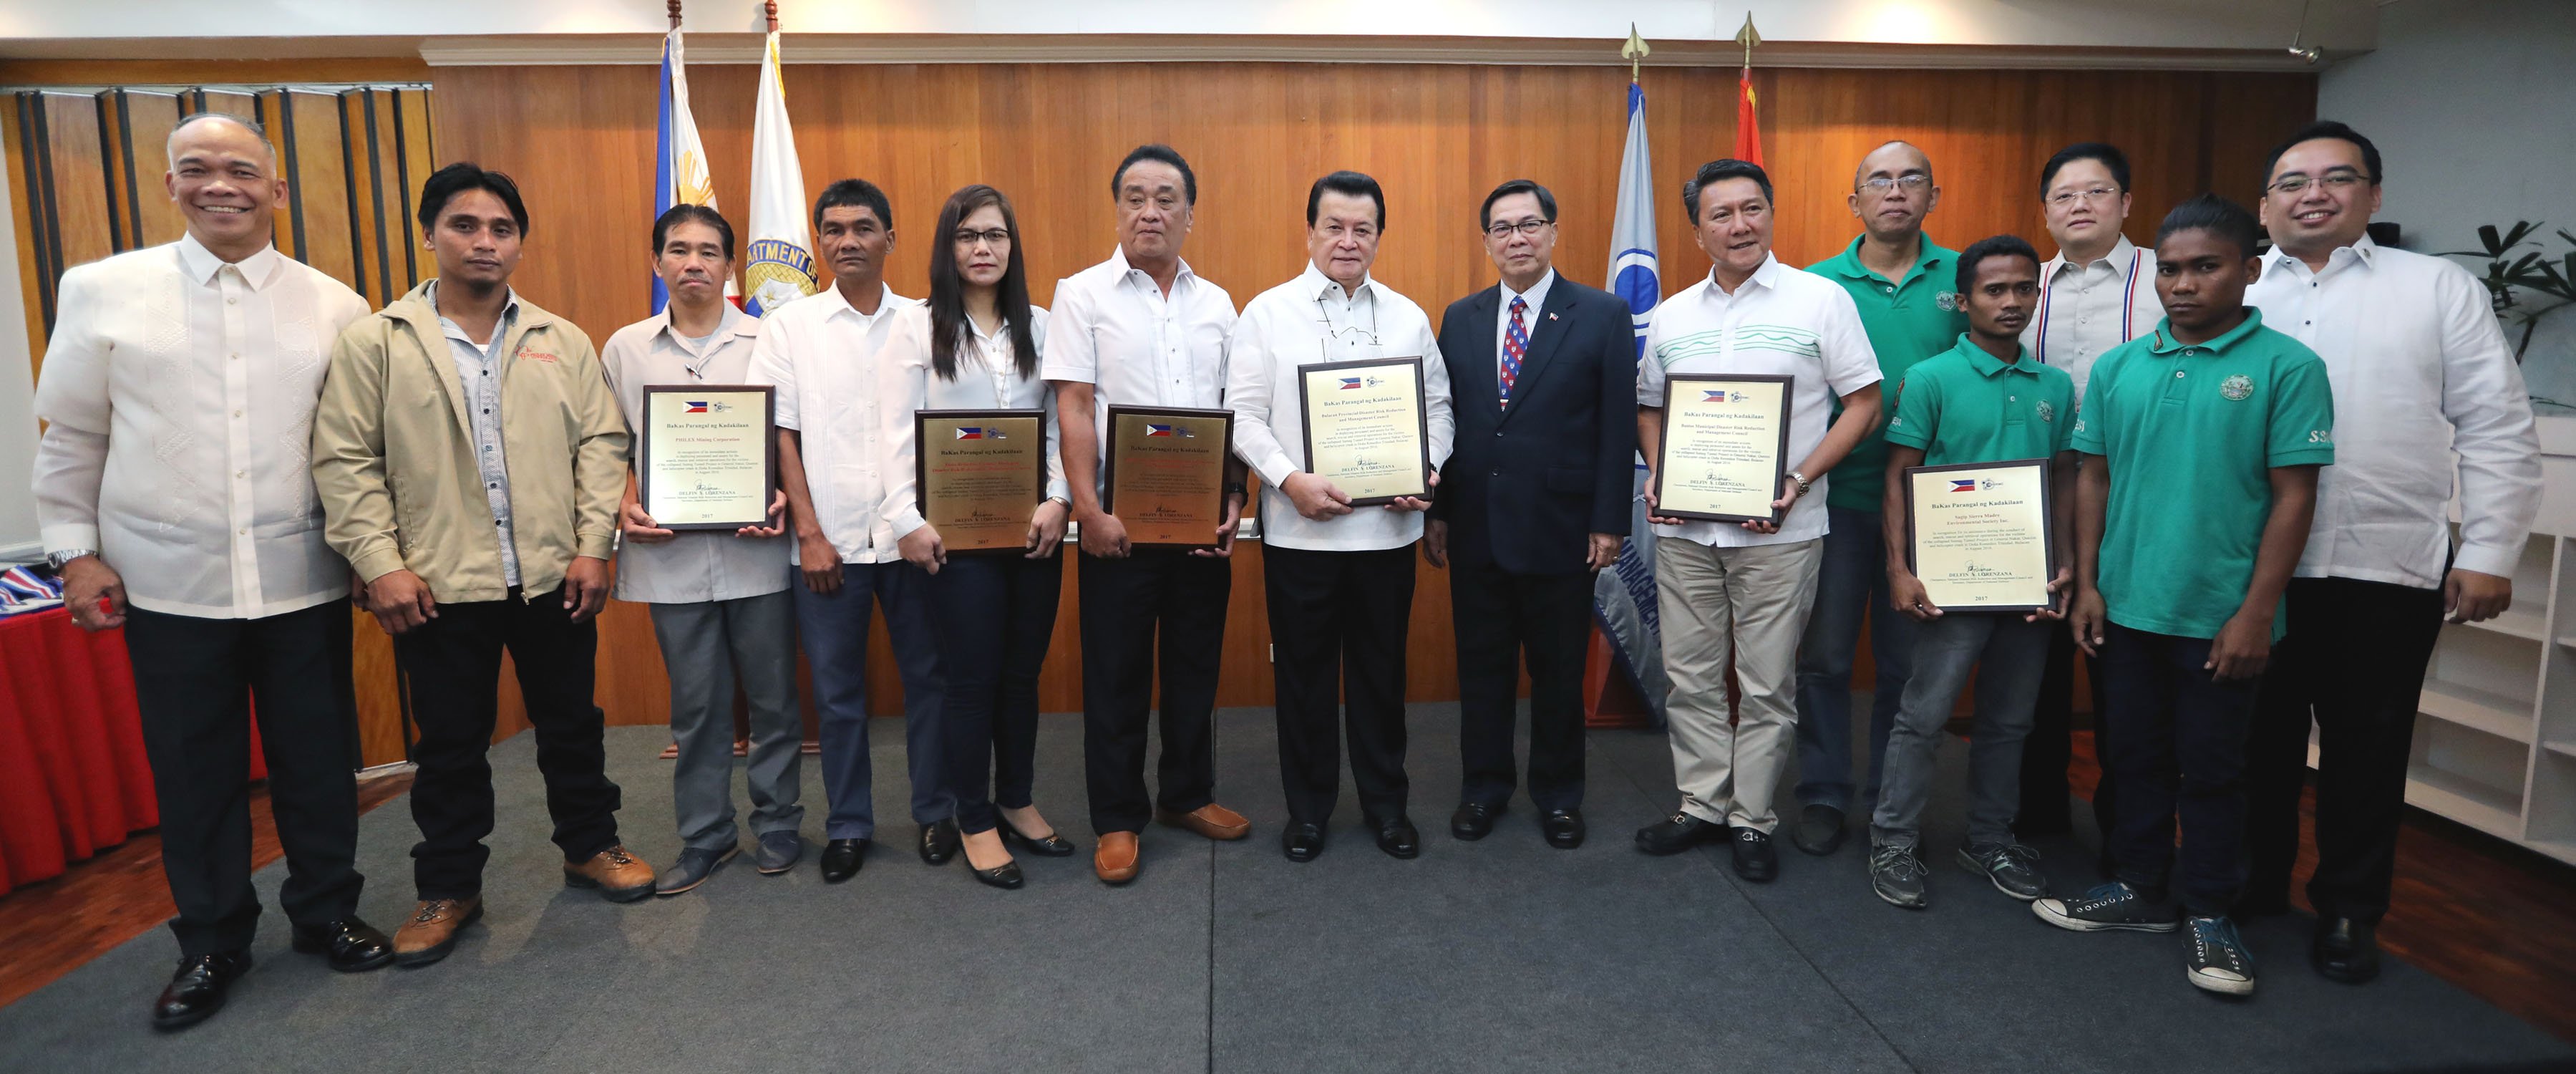 'Bakas ng Kadakilaan' awardees